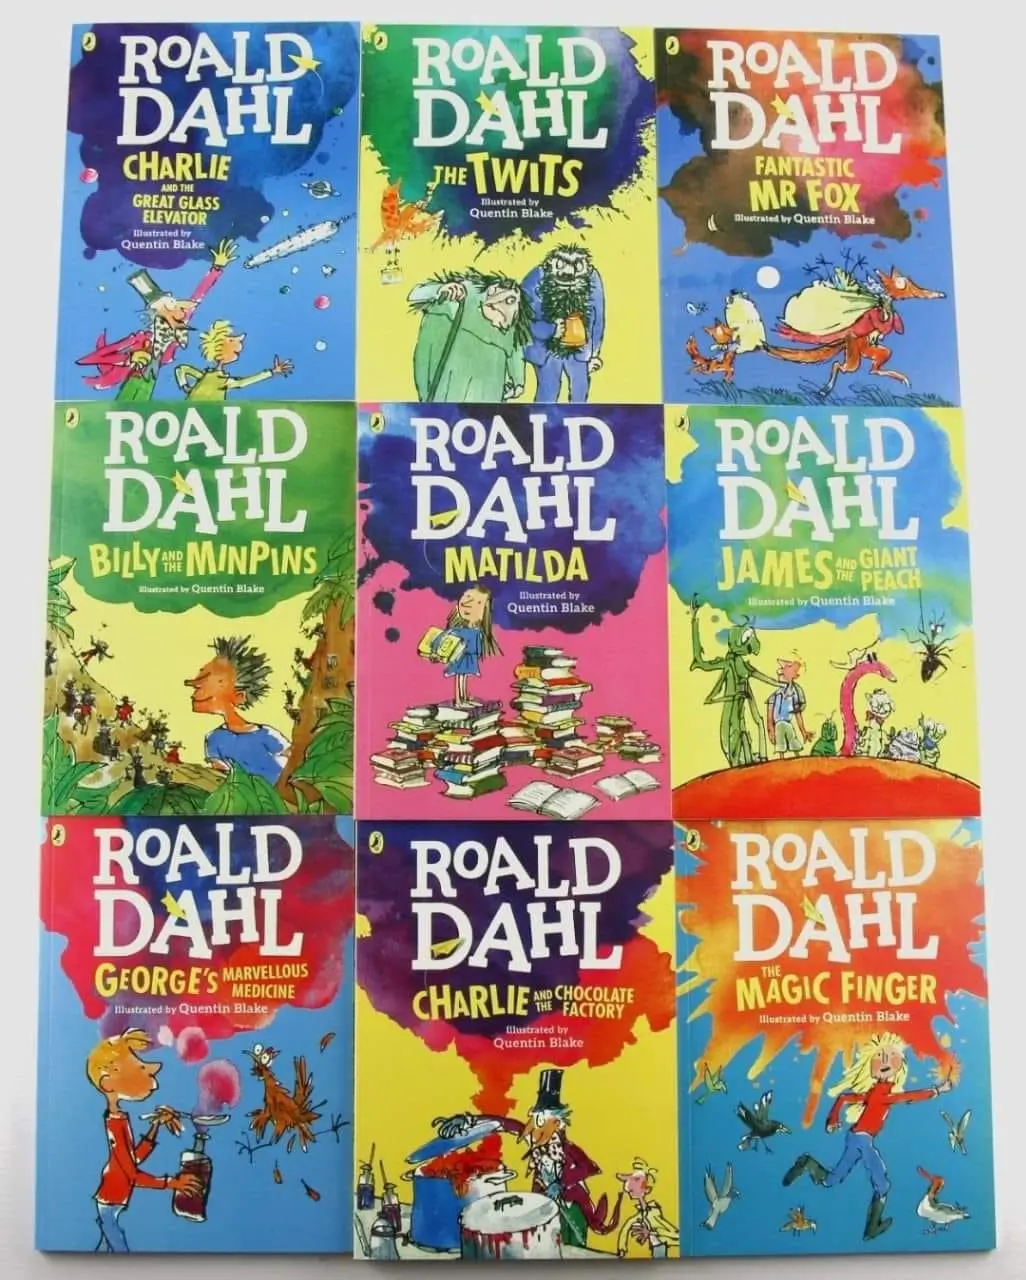 Roald Dahl tiếng anh nhập màu 18 cuốn